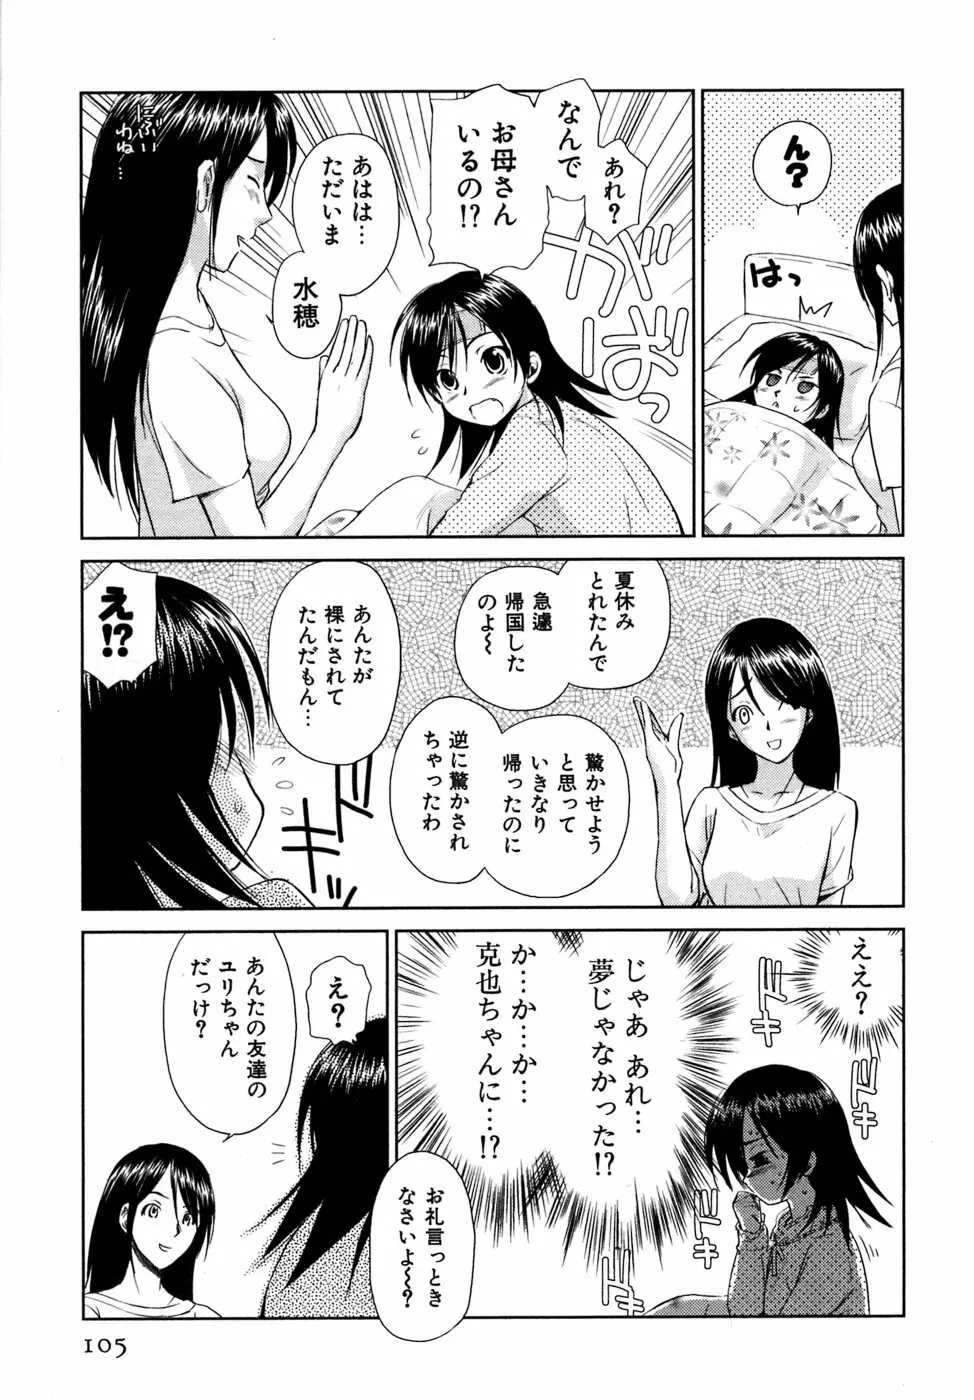 小あくま天使桃色系 03 106ページ